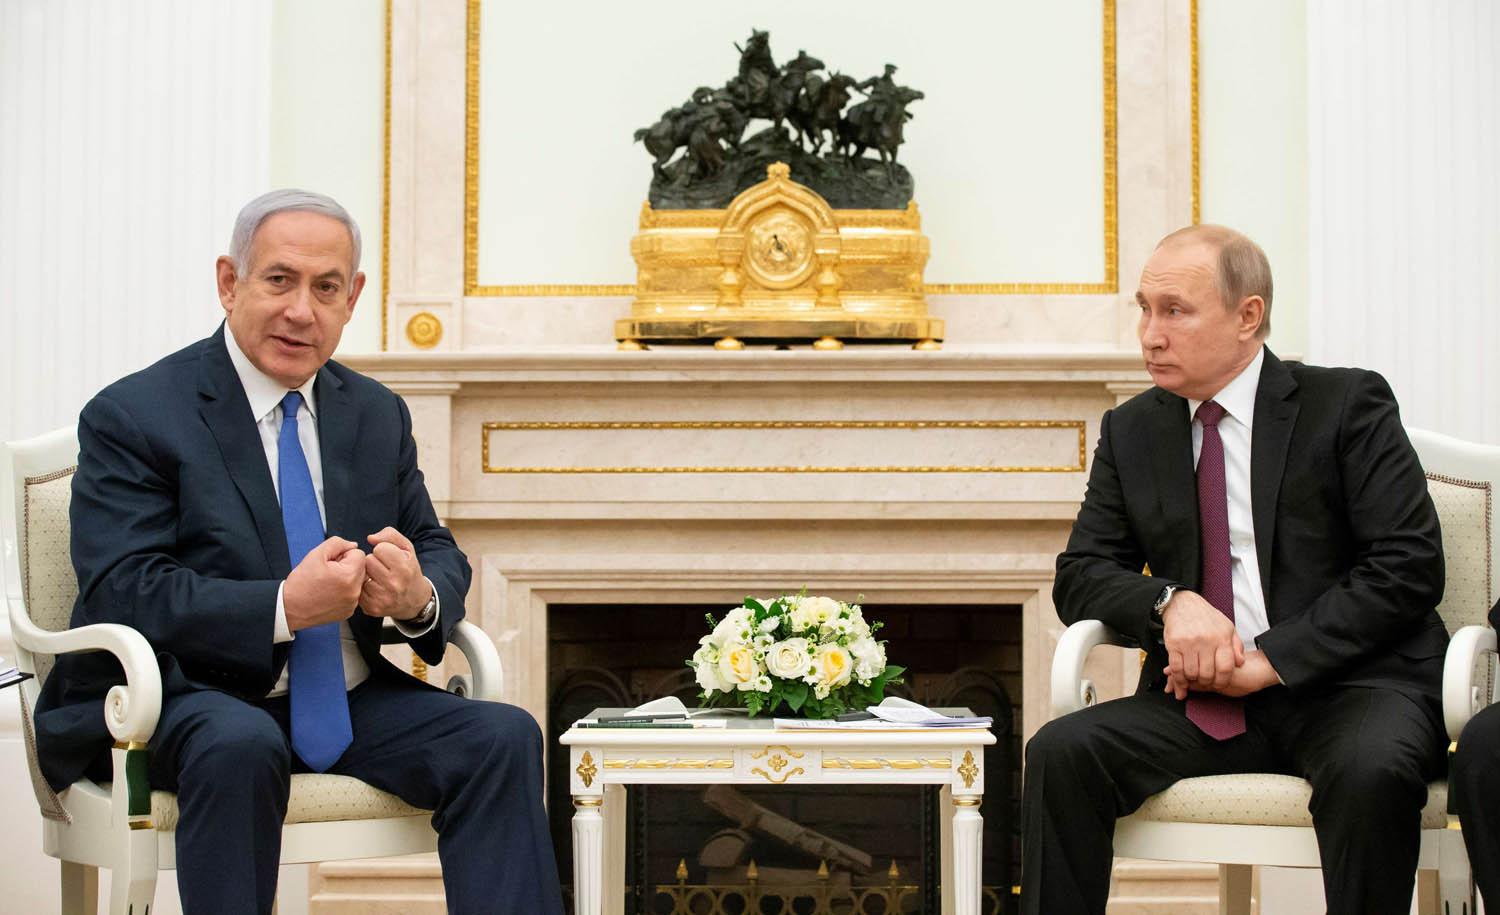 الرئيس الروسي فلاديمير بوتين ورئيس الوزراء الإسرائيلي بنيامين نتانياهو في لقاء بالكرملين في موسكو